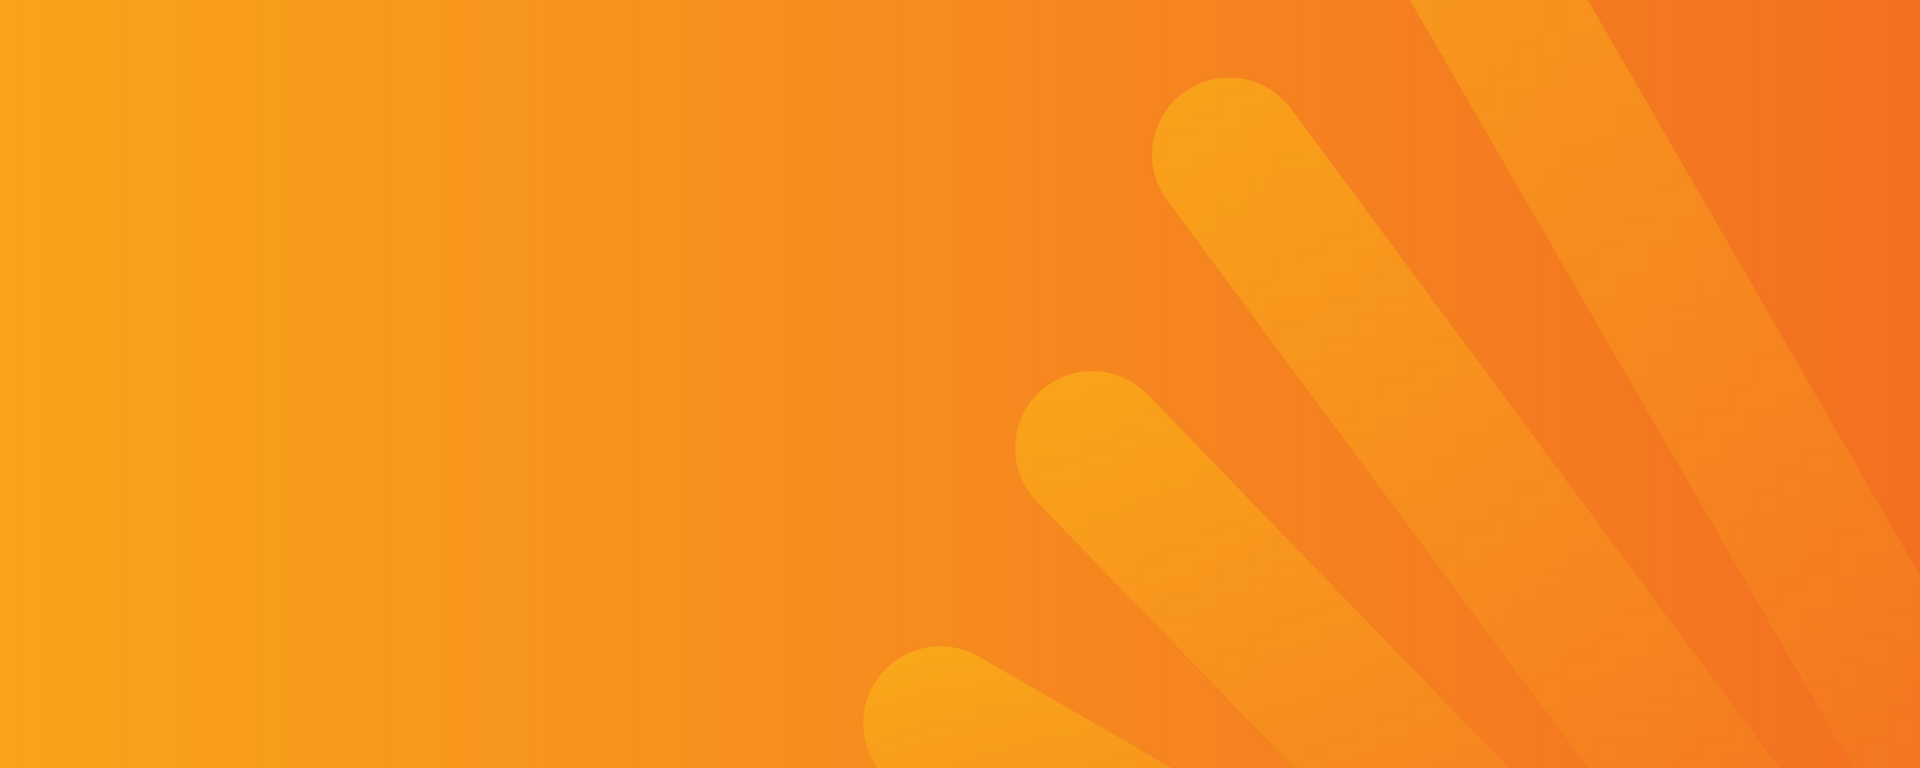 orange azrieli accelerator web banner 